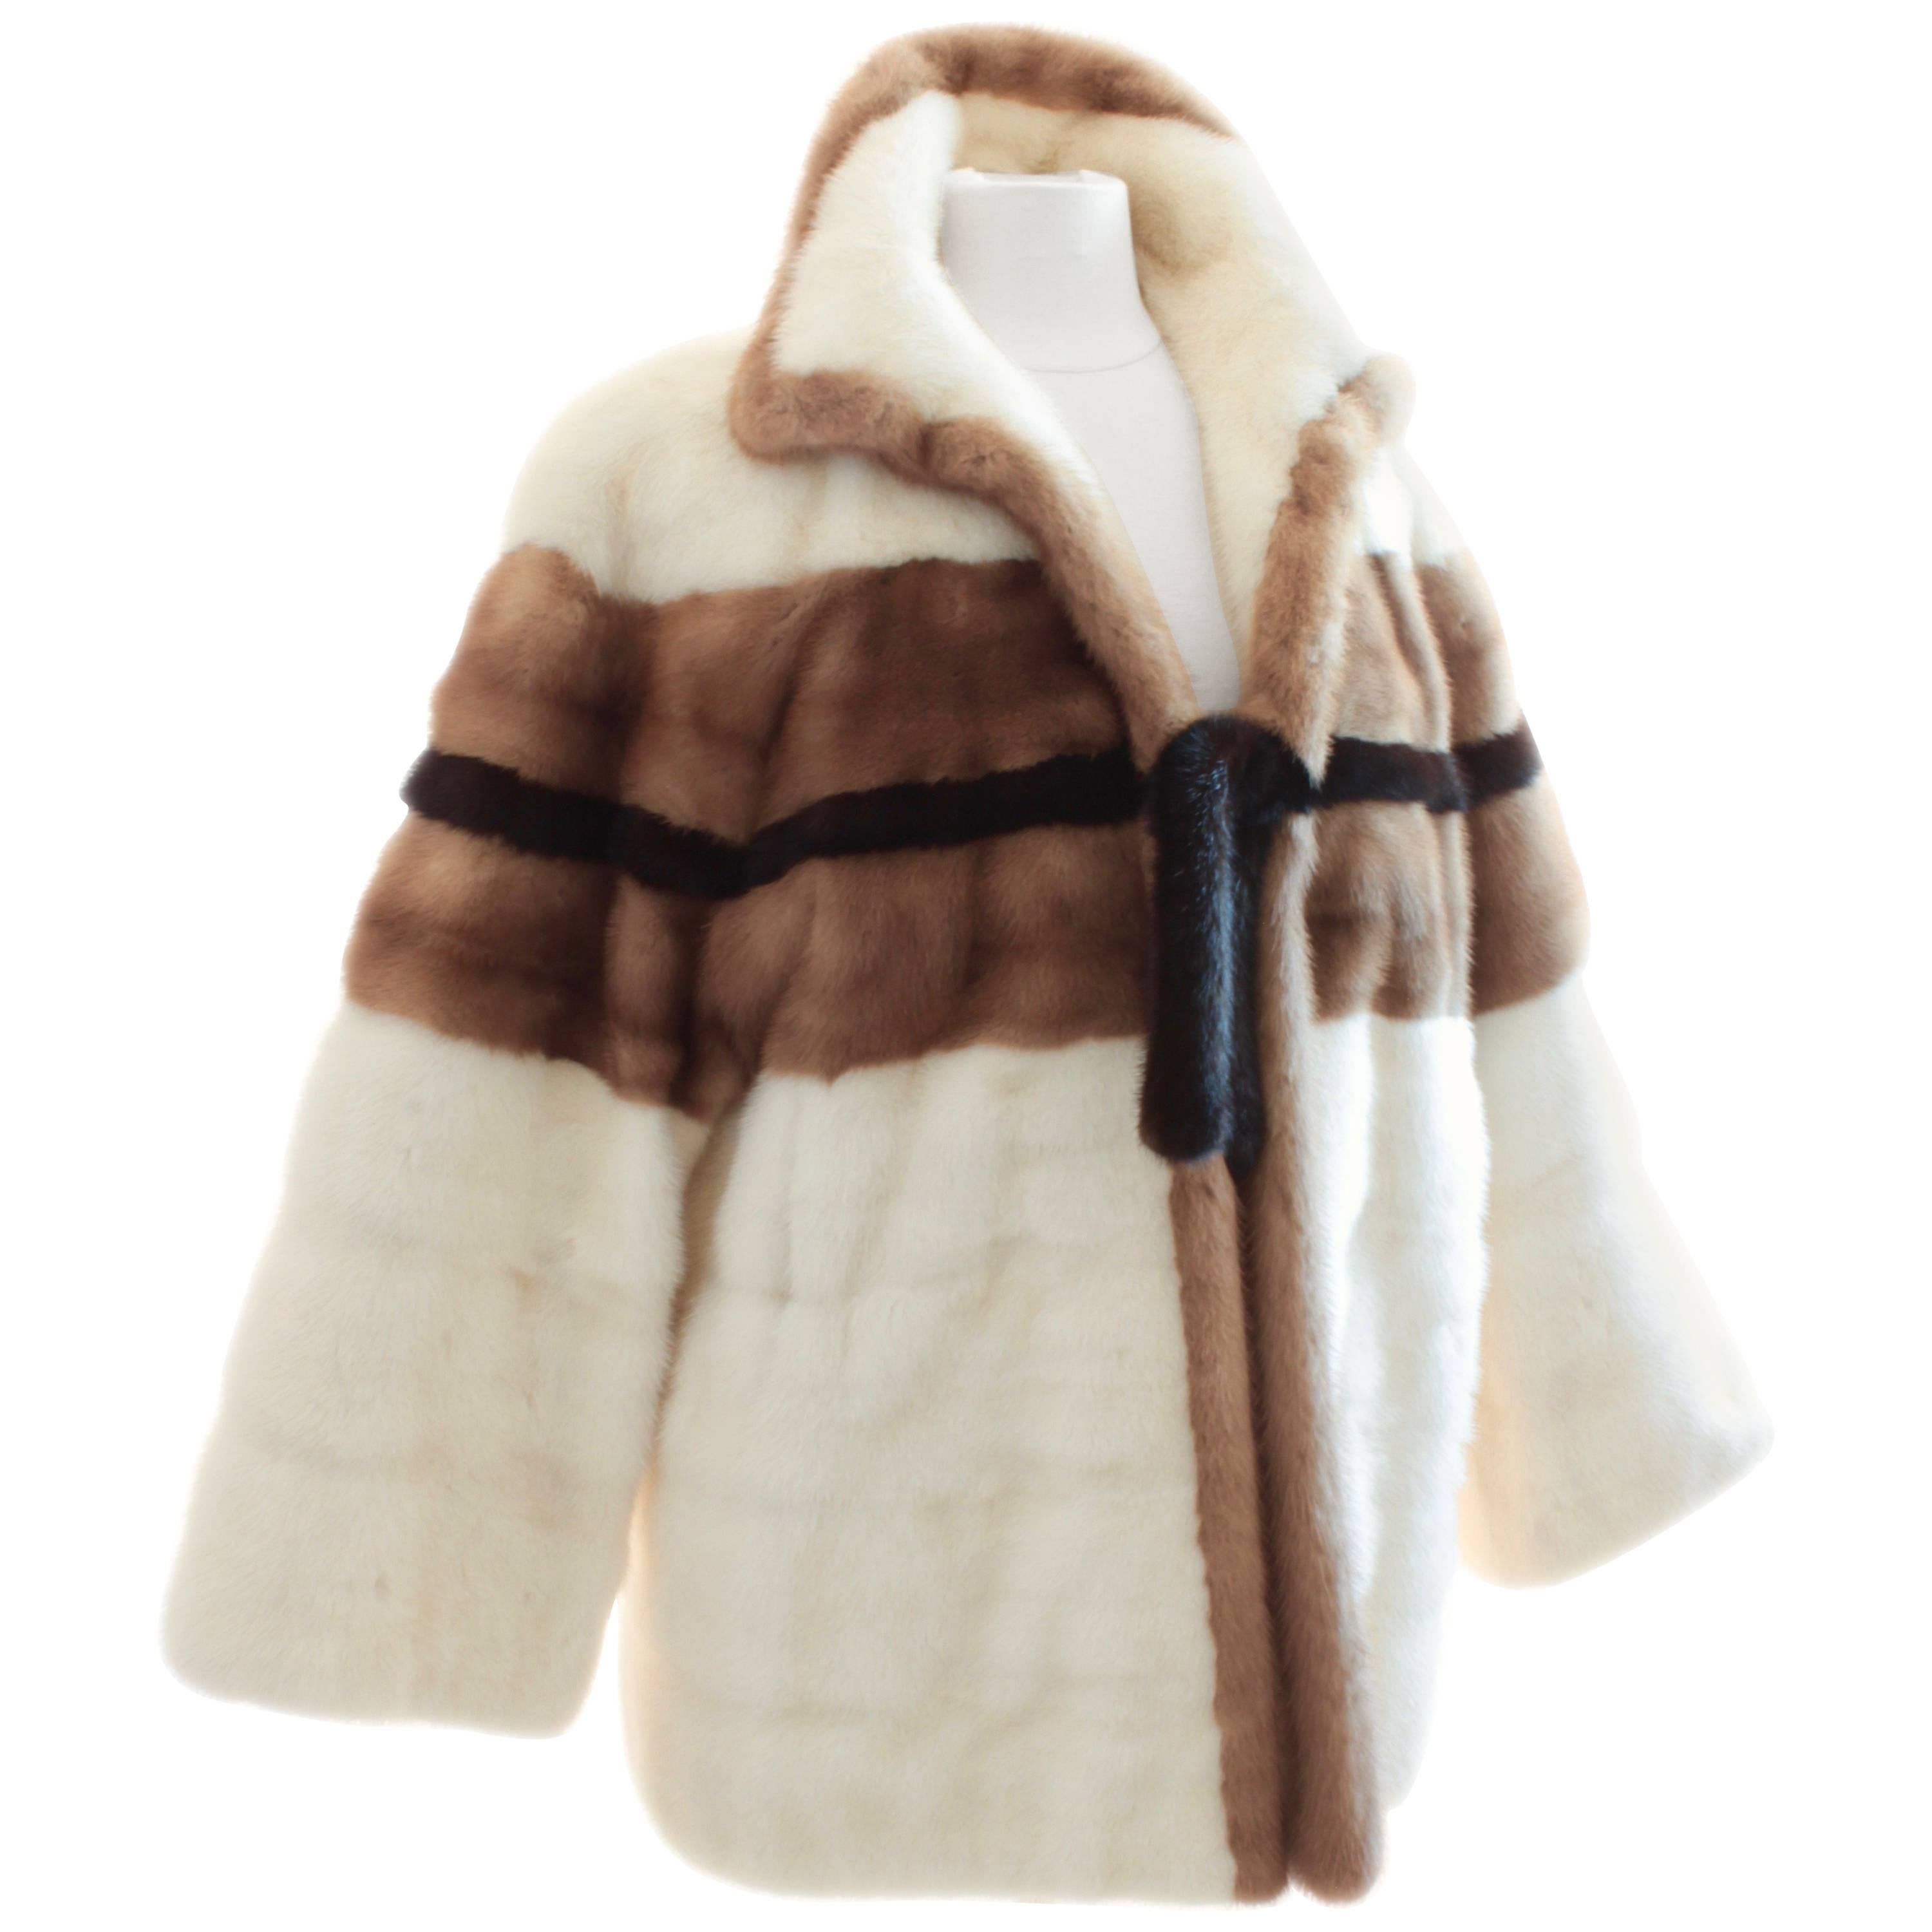 Grosvenor Bonwit Teller Mink Jacket White Pastel Dark Ranch Fur As Seen in Vogue